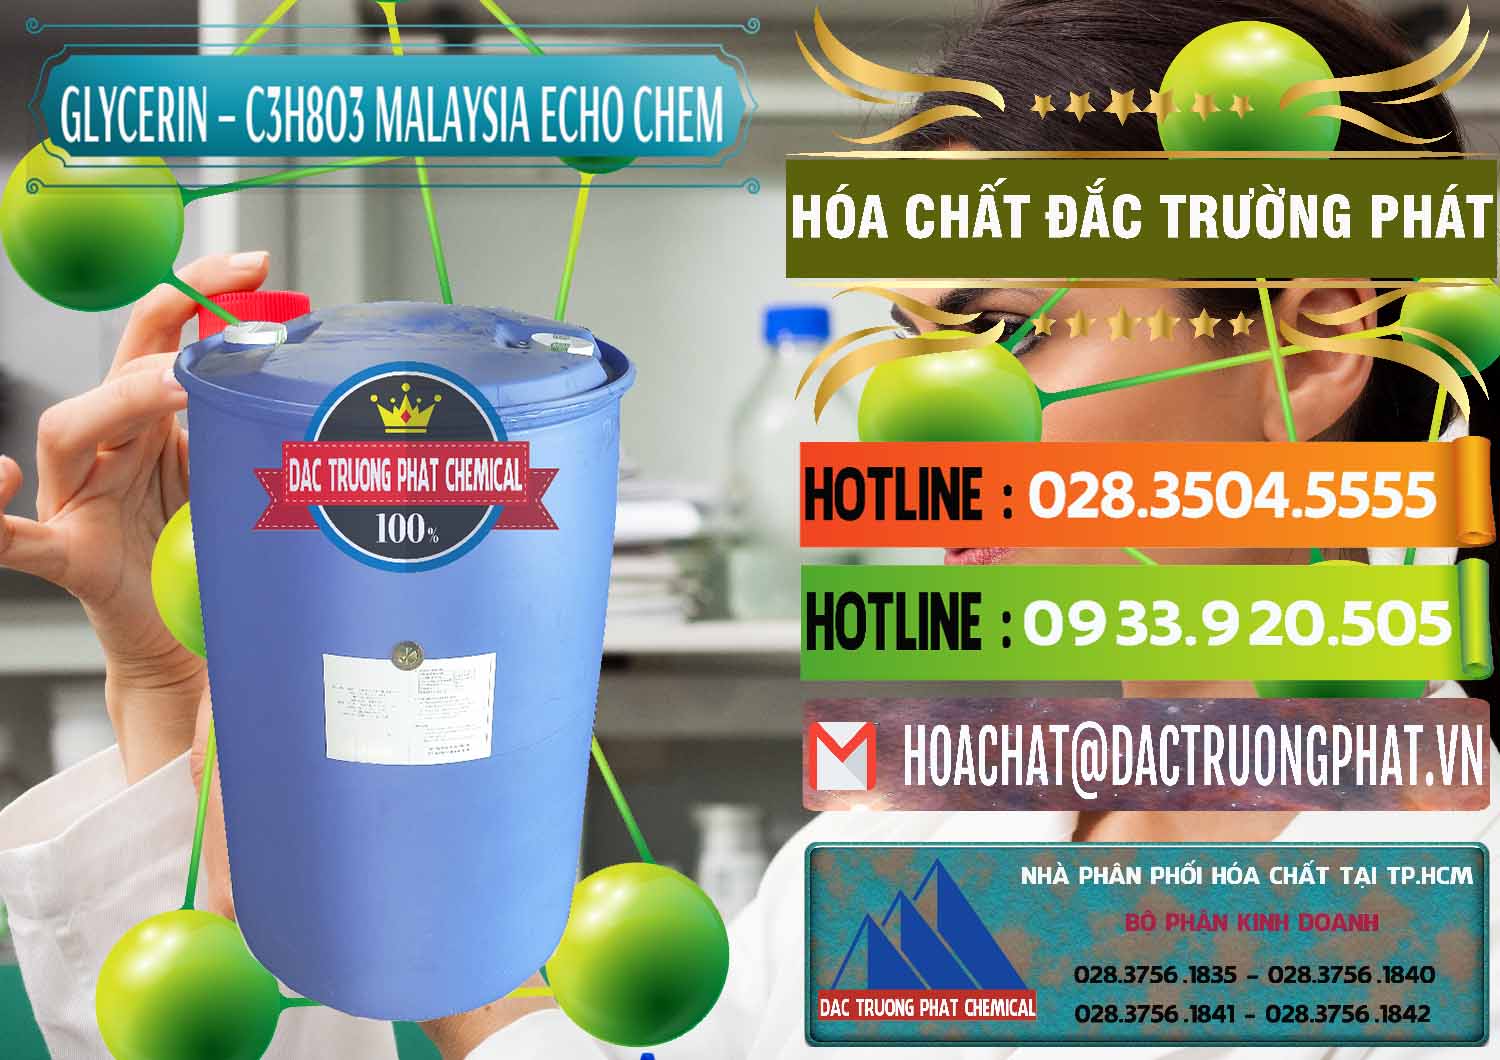 Nơi chuyên nhập khẩu _ bán Glycerin – C3H8O3 99.7% Echo Chem Malaysia - 0273 - Công ty chuyên phân phối - bán hóa chất tại TP.HCM - cungcaphoachat.com.vn